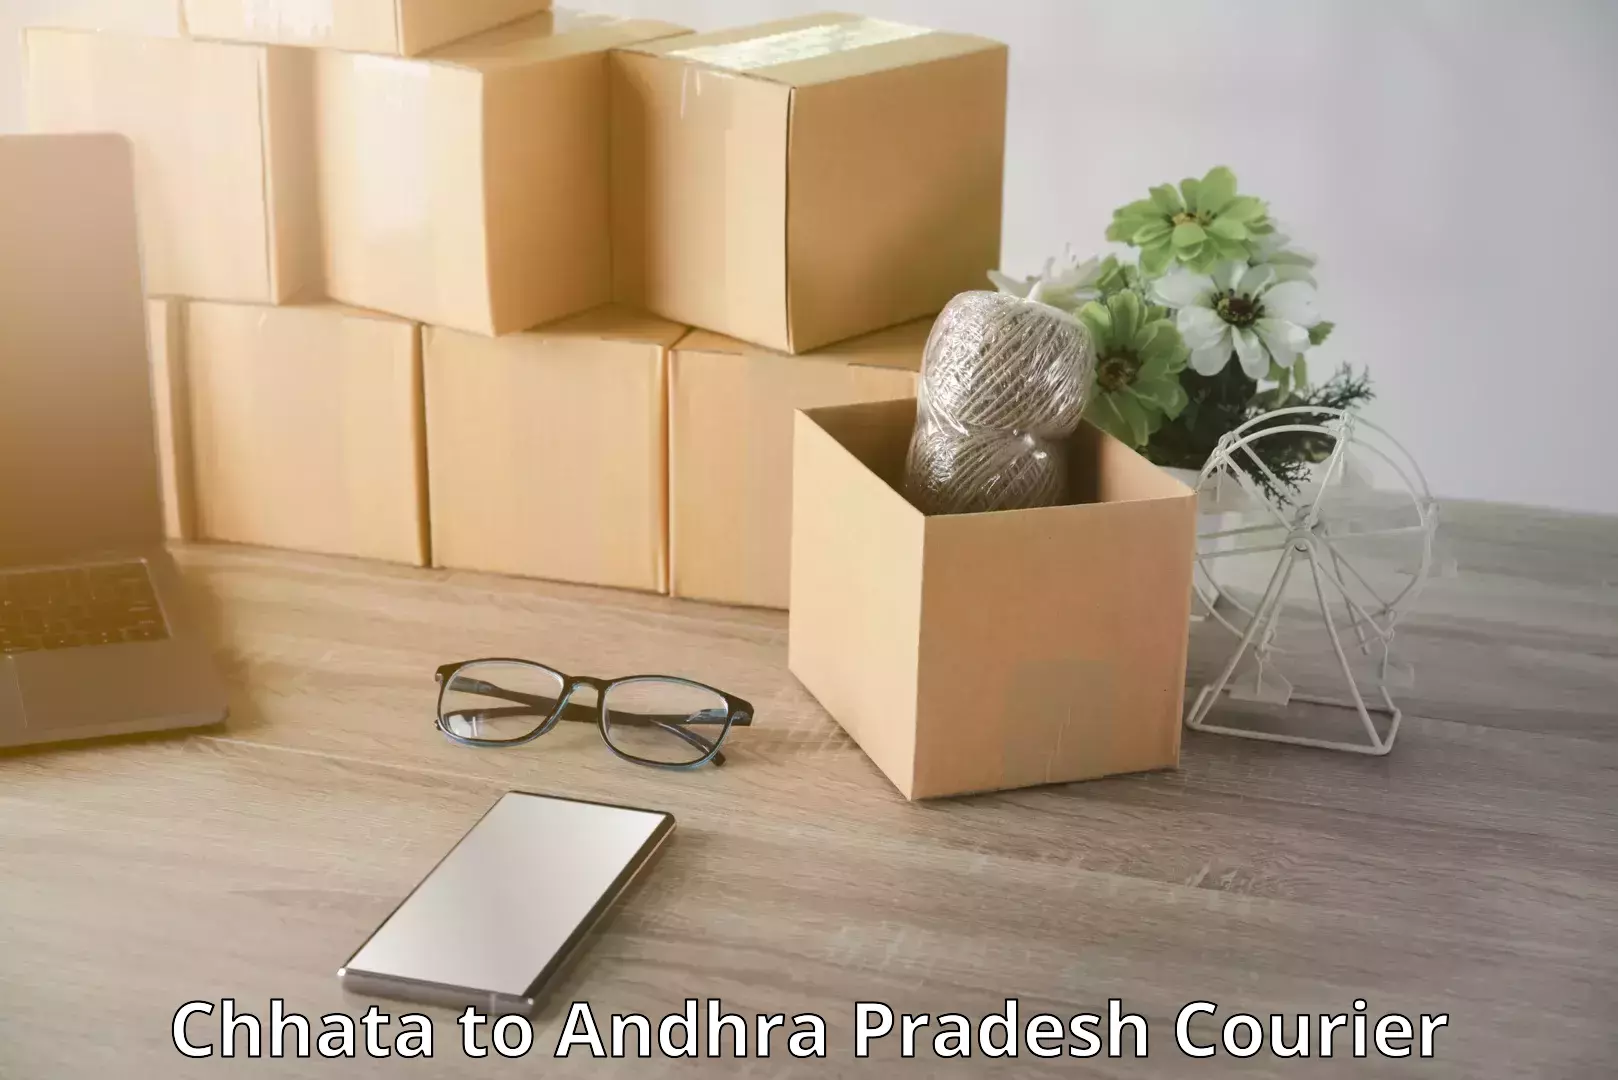 Door-to-door baggage service Chhata to Andhra Pradesh